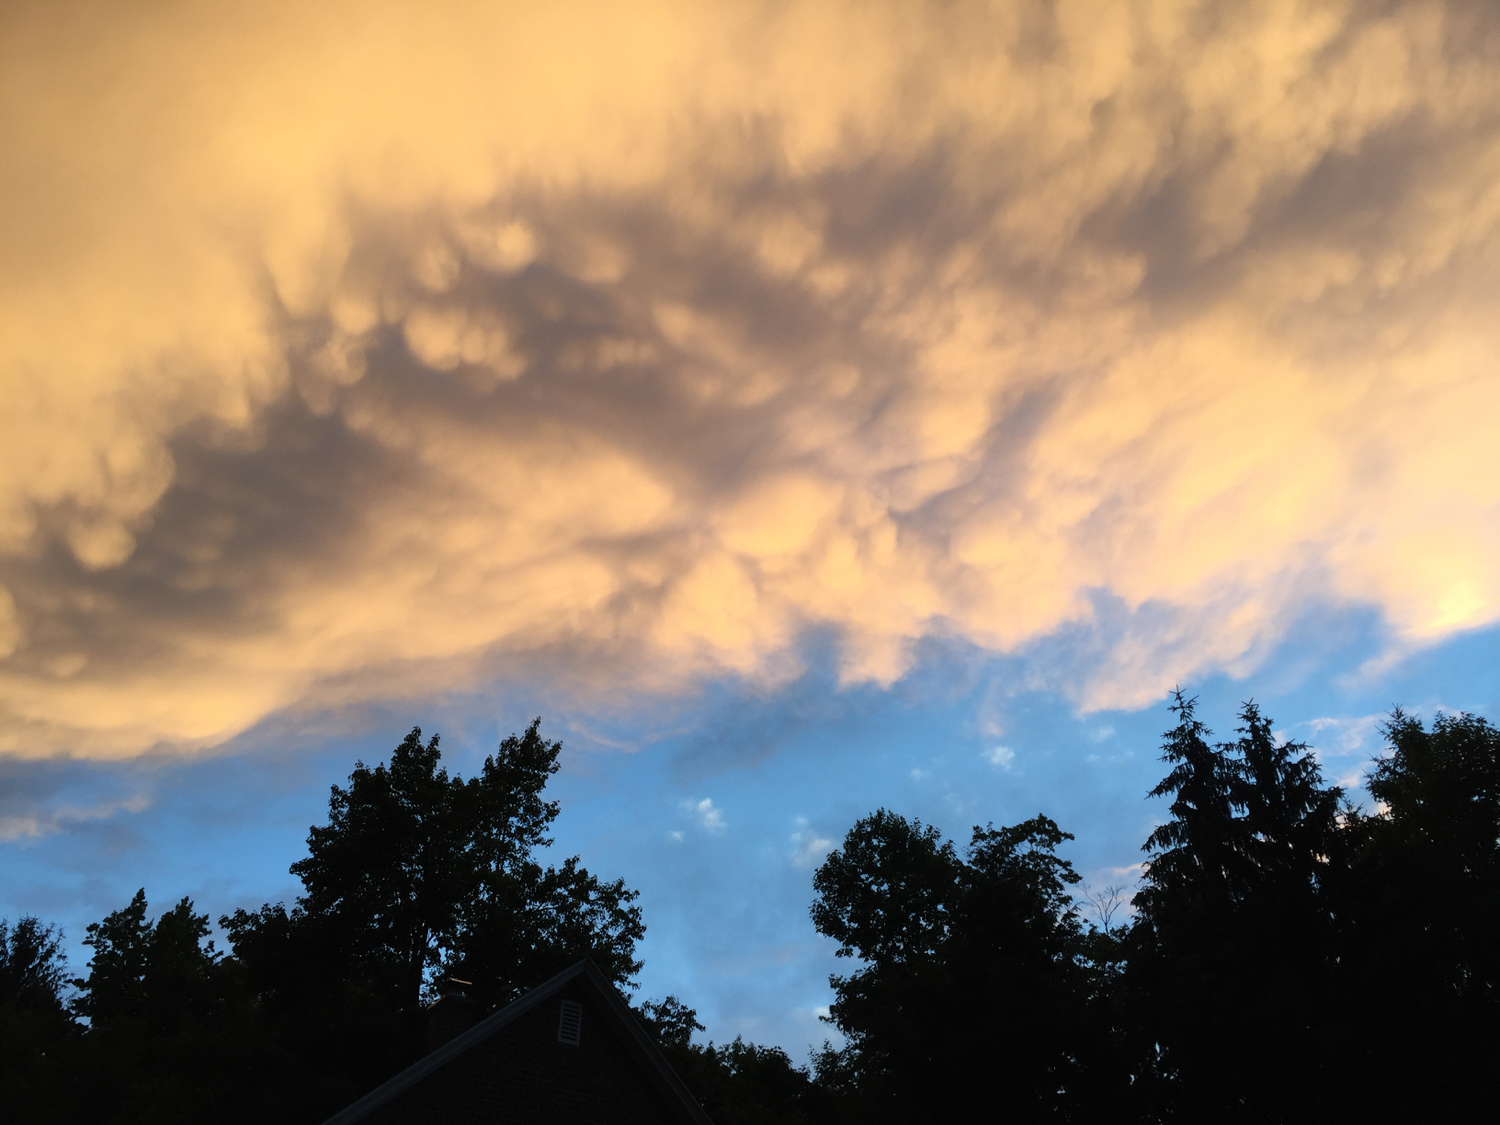 July - Ominously beautiful clouds, Ludlow, MA